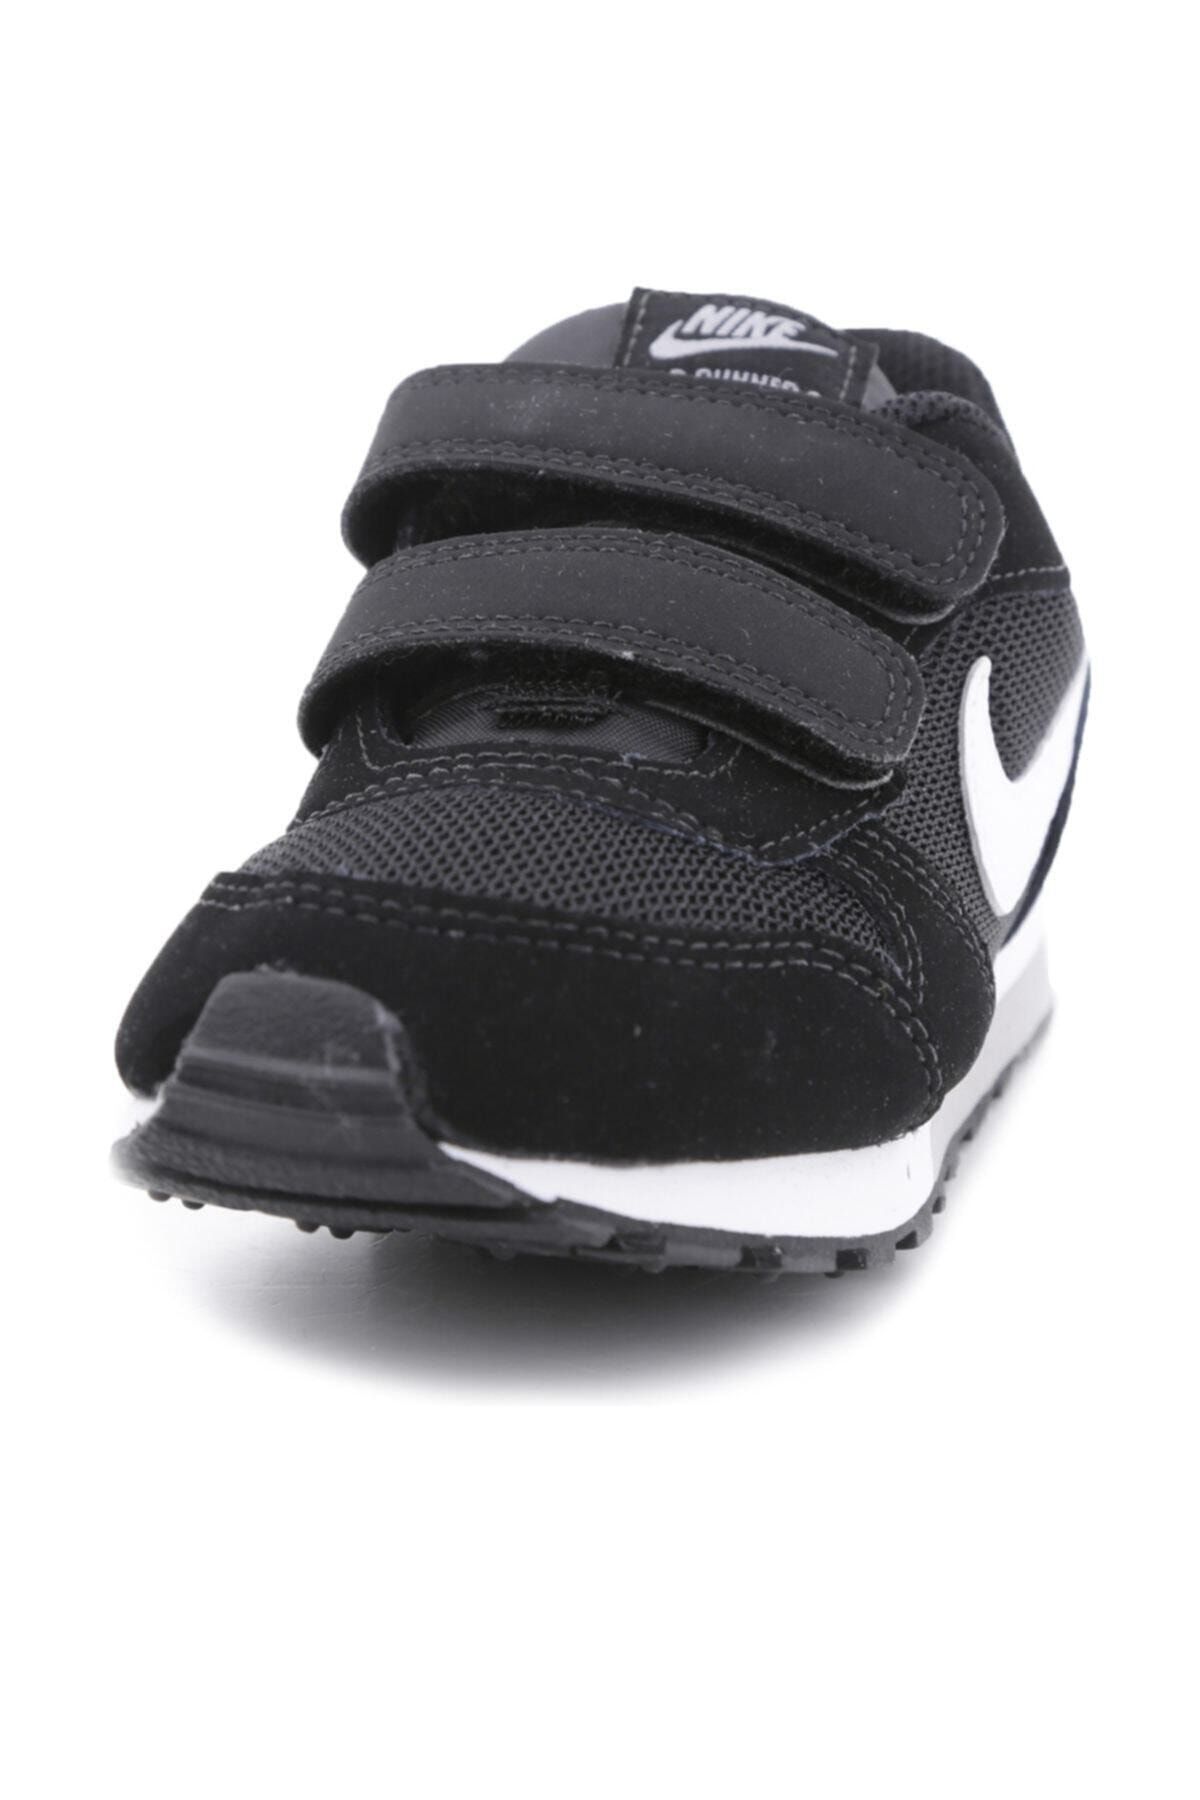 Nike Unisex Spor Ayakkabı - Md Runner 2 [Psv] - 807317-001